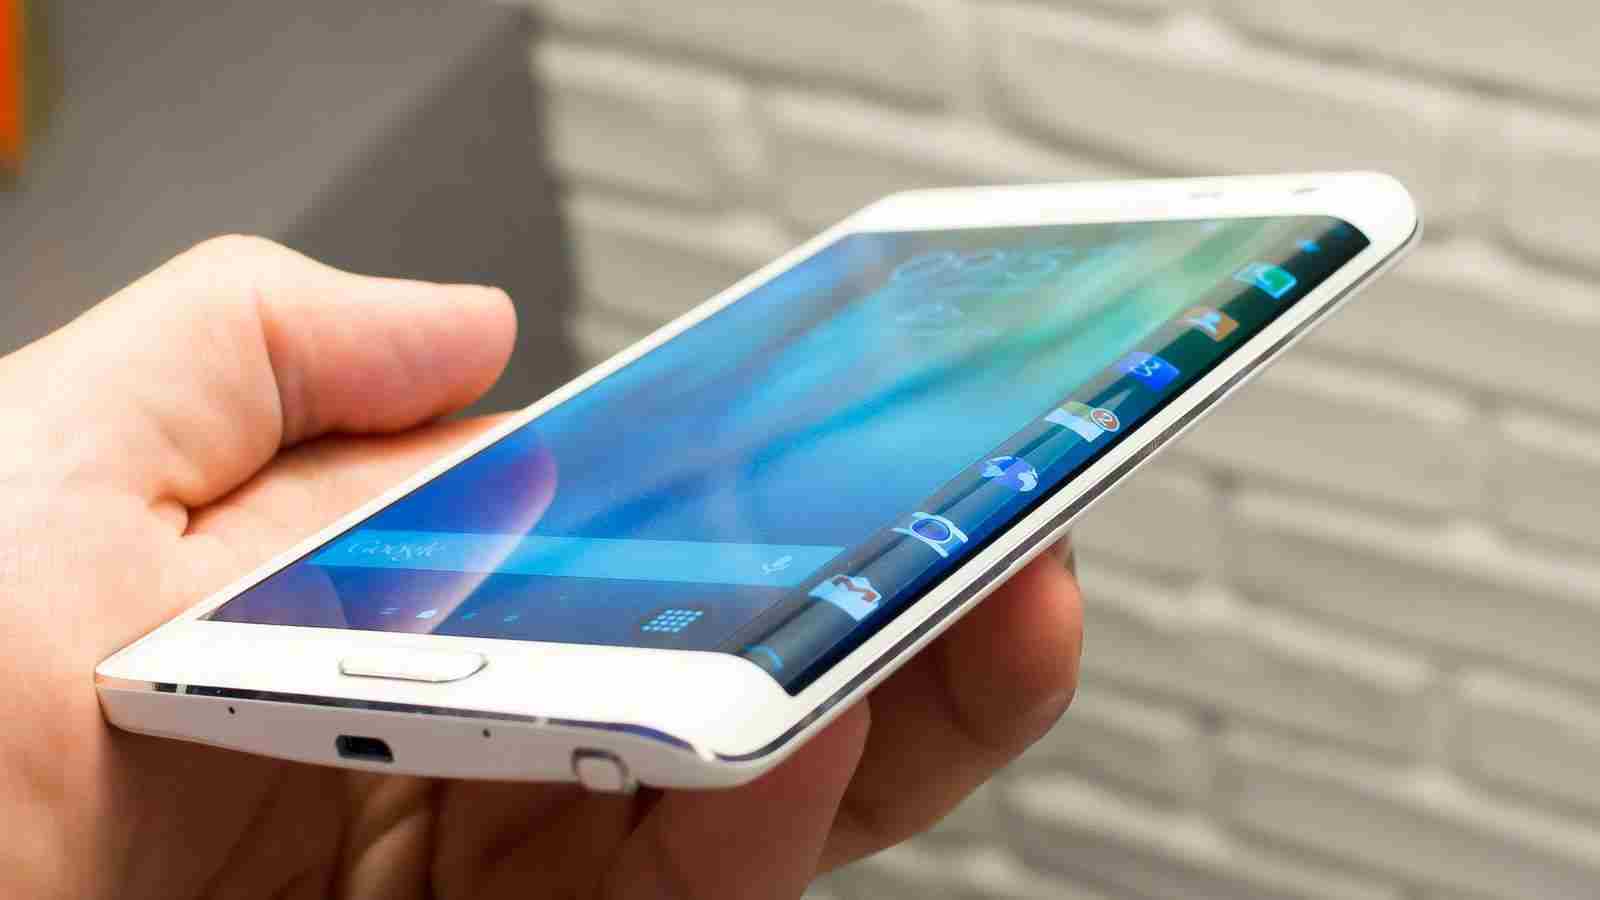 Samsung Galaxy Note 5 может получить 4К-дисплей